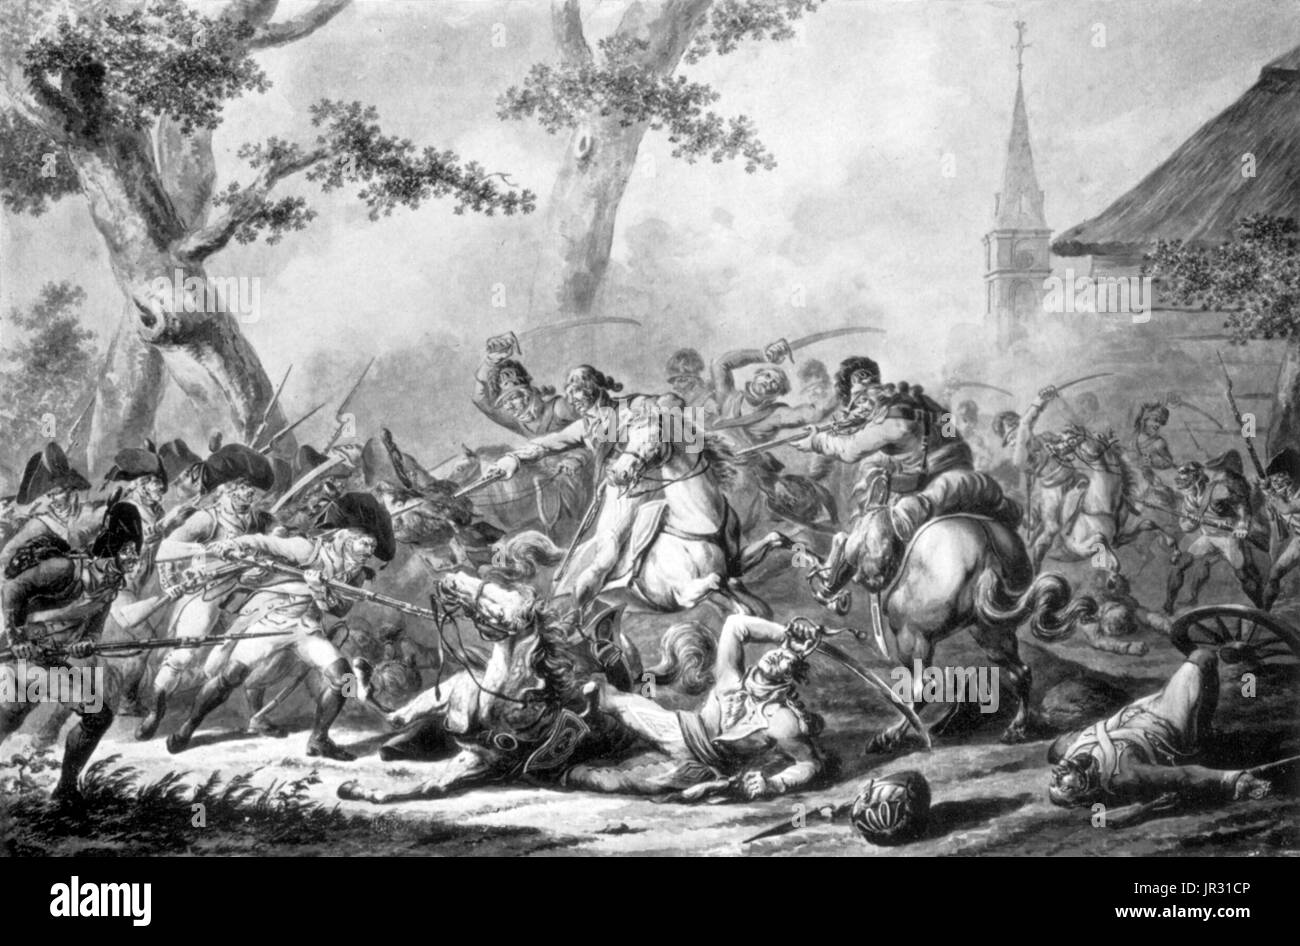 Pendant les guerres napoléoniennes, les Dragoons suppose généralement un rôle de cavalerie, bien que restant une classe plus léger de troupes montées de l'armored cuirassiers. Dragoons rode plus grande que les chevaux la cavalerie légère et exercé directement, plutôt que d'épées courbées. L'Empereur Napoléon formaient souvent des divisions complète hors de ses 30 régiments de dragons et les ont utilisés comme cavalerie bataille pour briser la résistance principale de l'ennemi. En 1809, les Dragons français ont obtenu des succès notables contre les armées espagnoles lors de la bataille d'Ocana et de la bataille d'Alba de Tormes. British Heavy Dragoons a fait des accusations contre dévastateur infa Français Banque D'Images